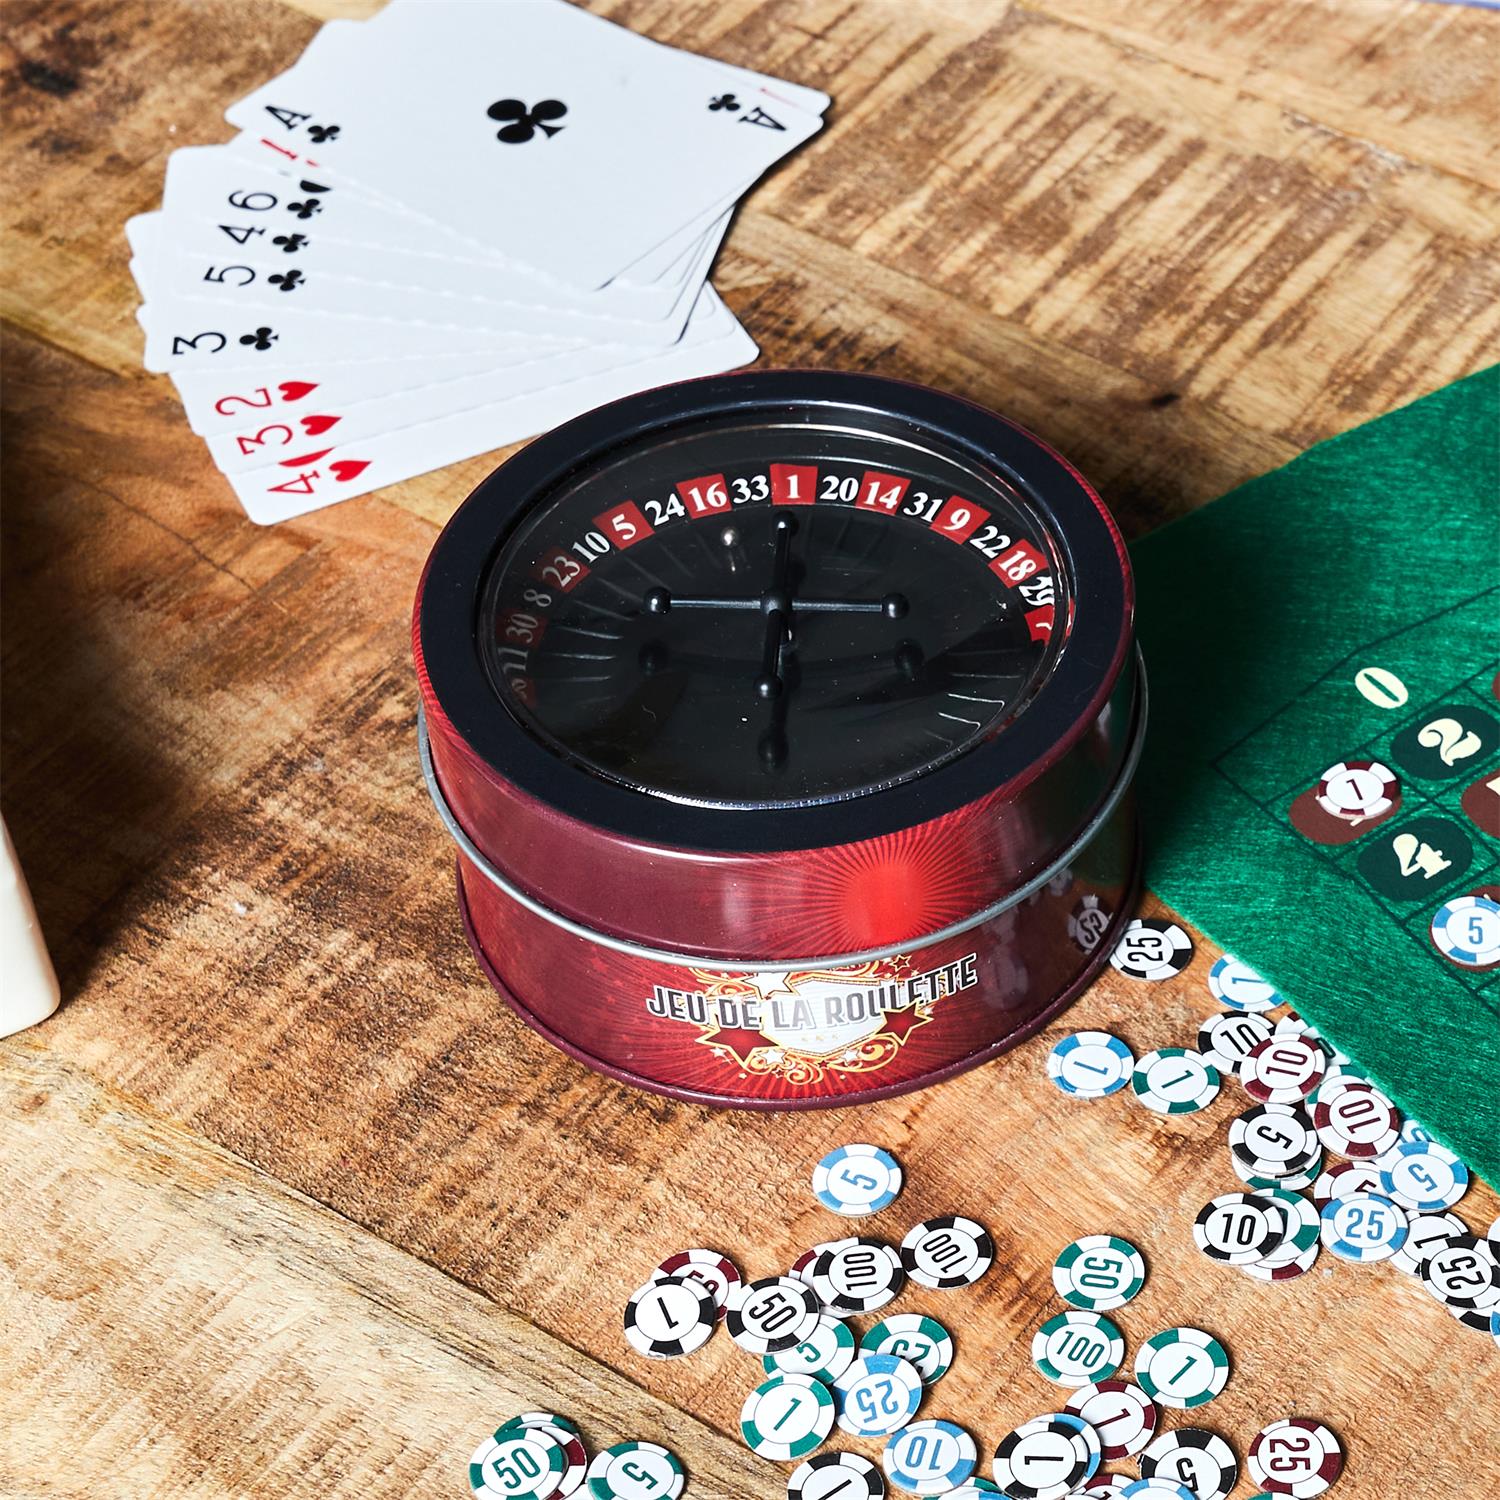 Mini Casino avec Roulette - Super Insolite